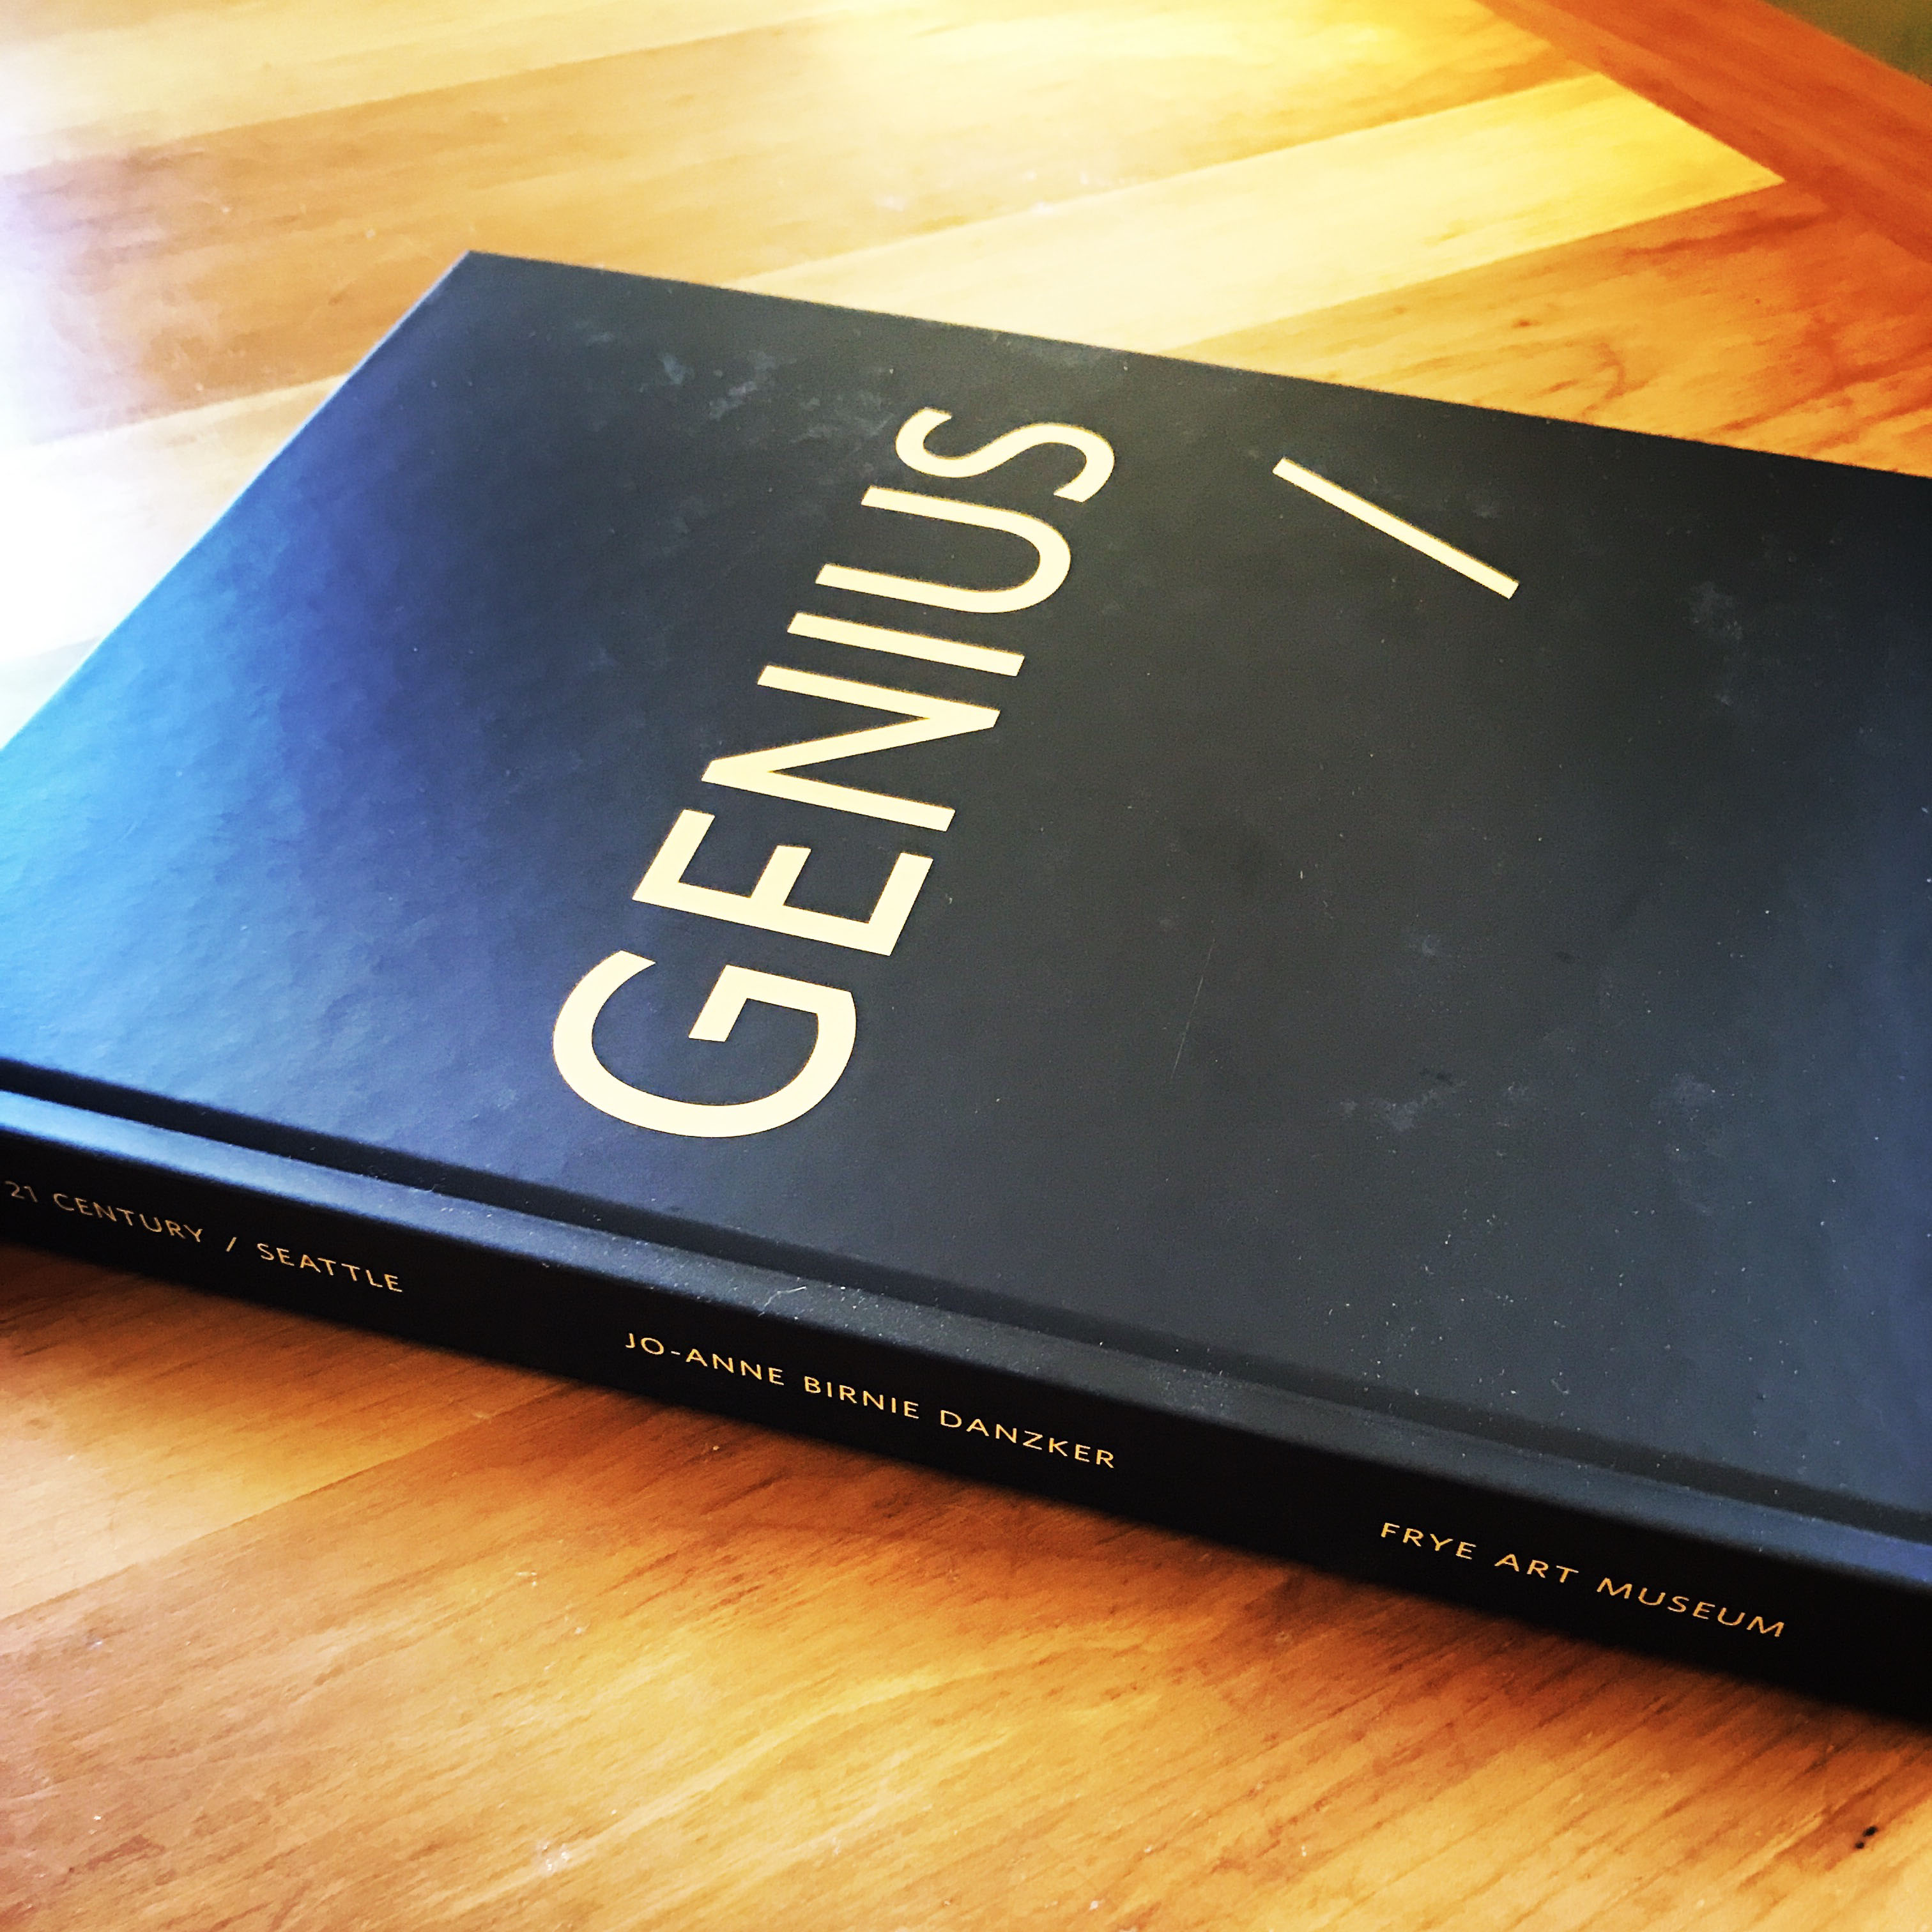 Genius / 21 Century / Seattle